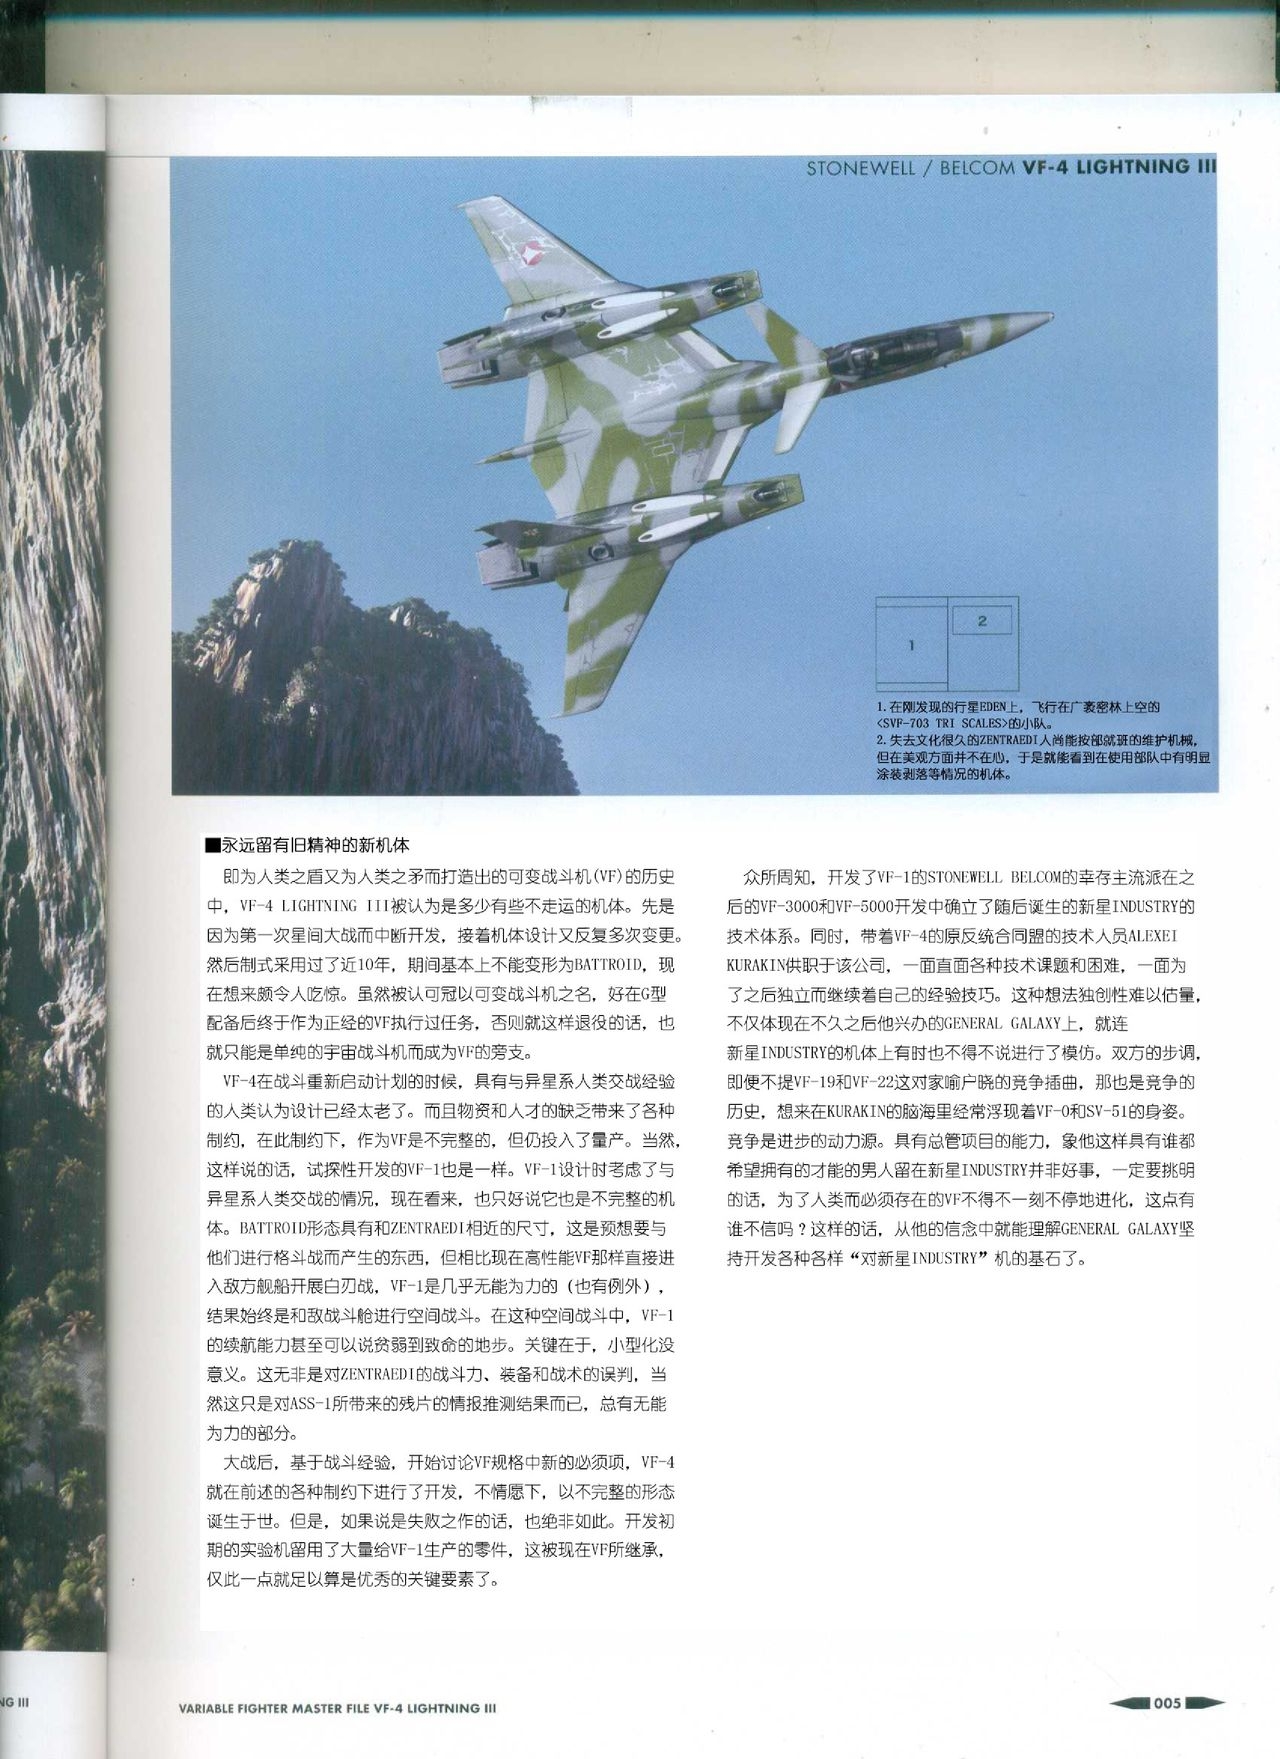 Variable Fighter Master File VF-4 Lightning III(CN) 6